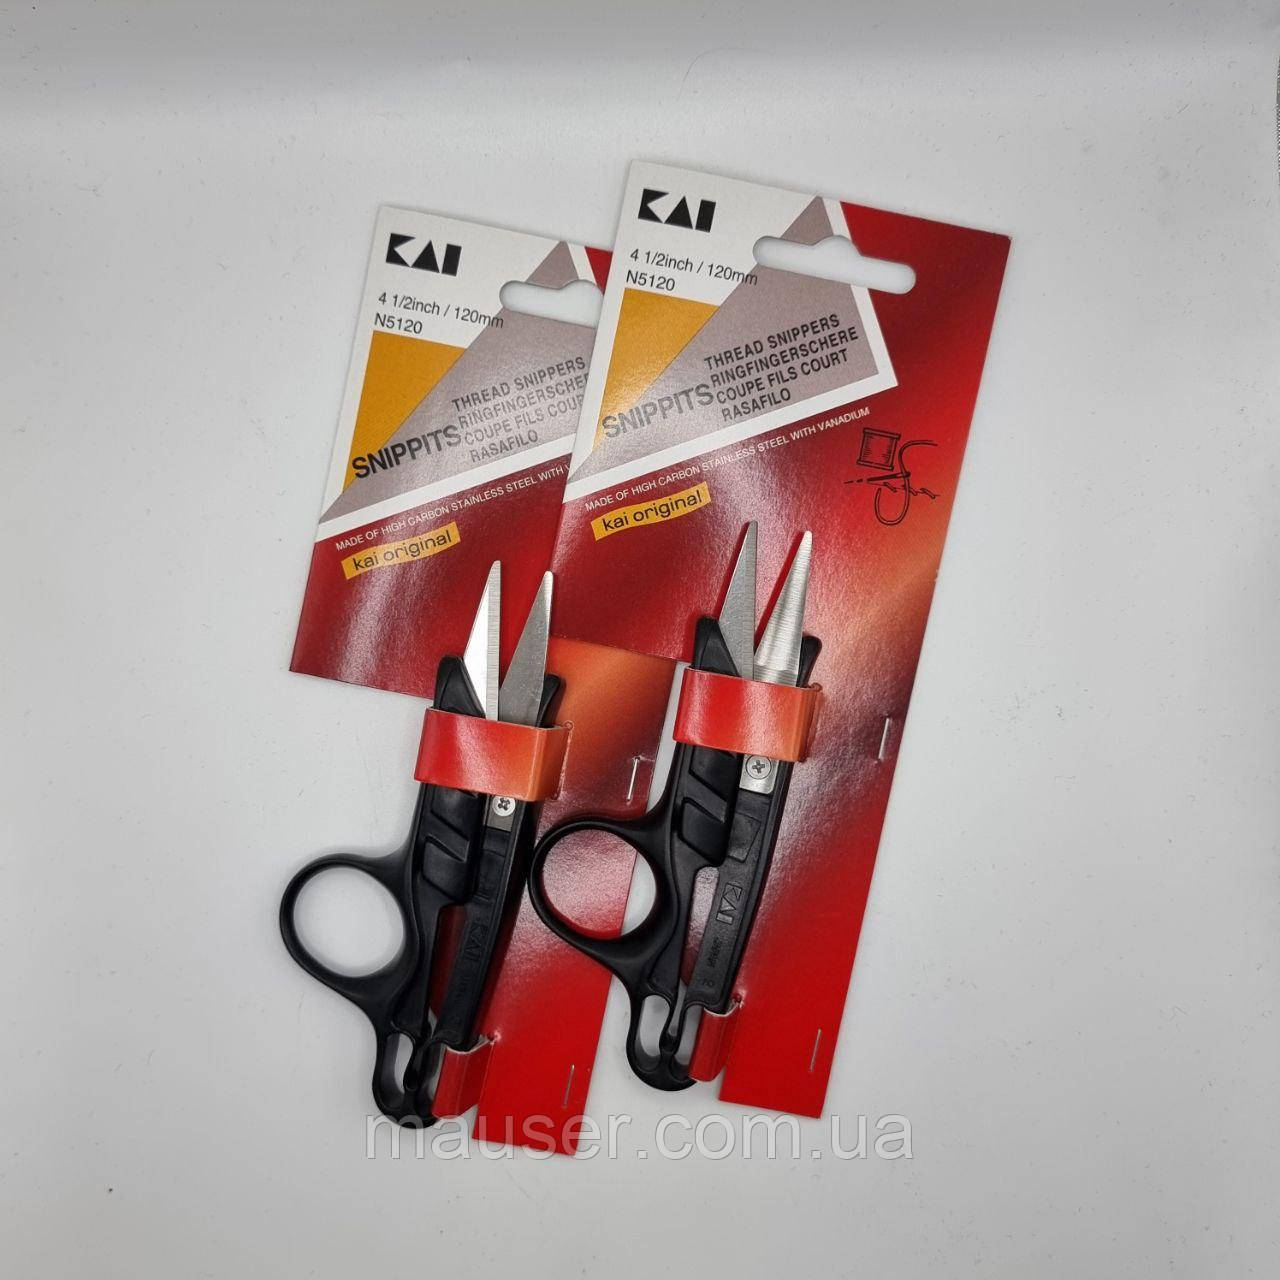 Ножиці для підрізування ниток KAI N5120 4 1/2 дюймів/120 мм